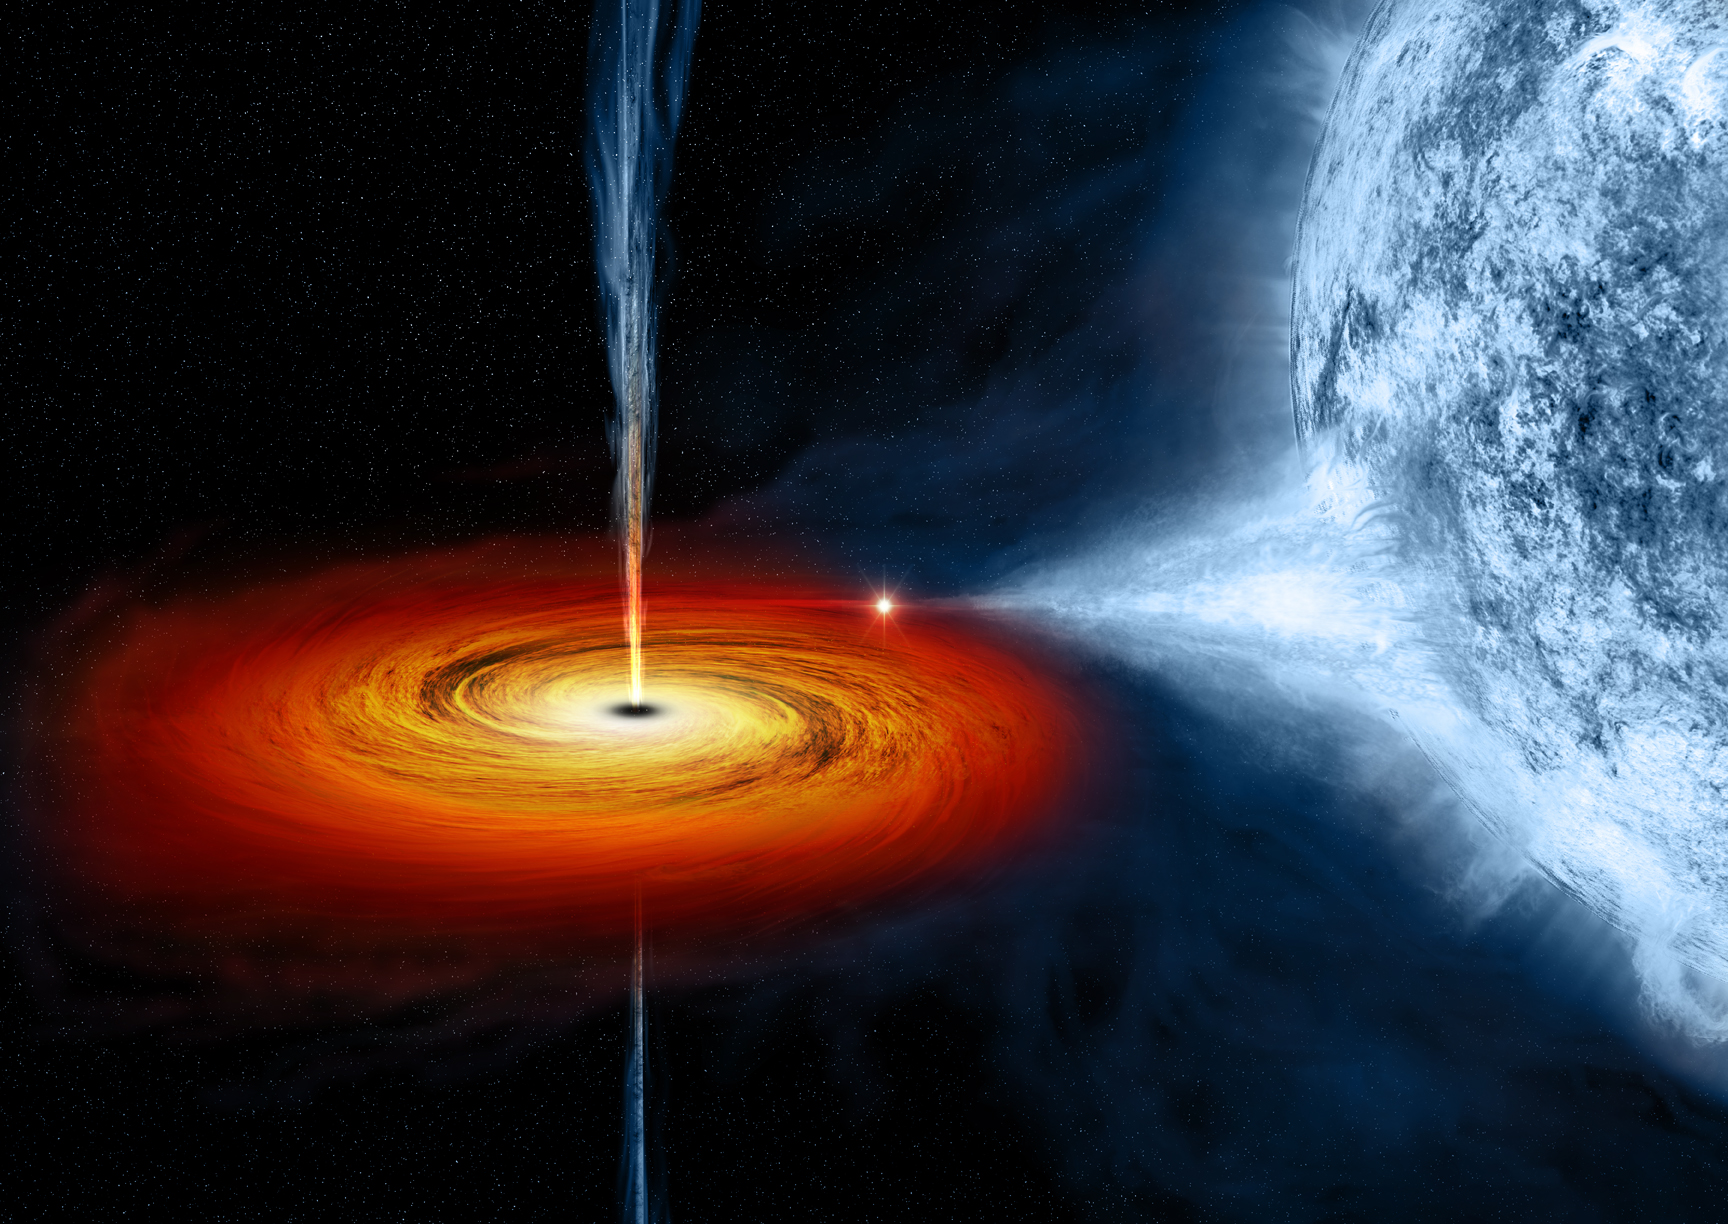 Black hole image